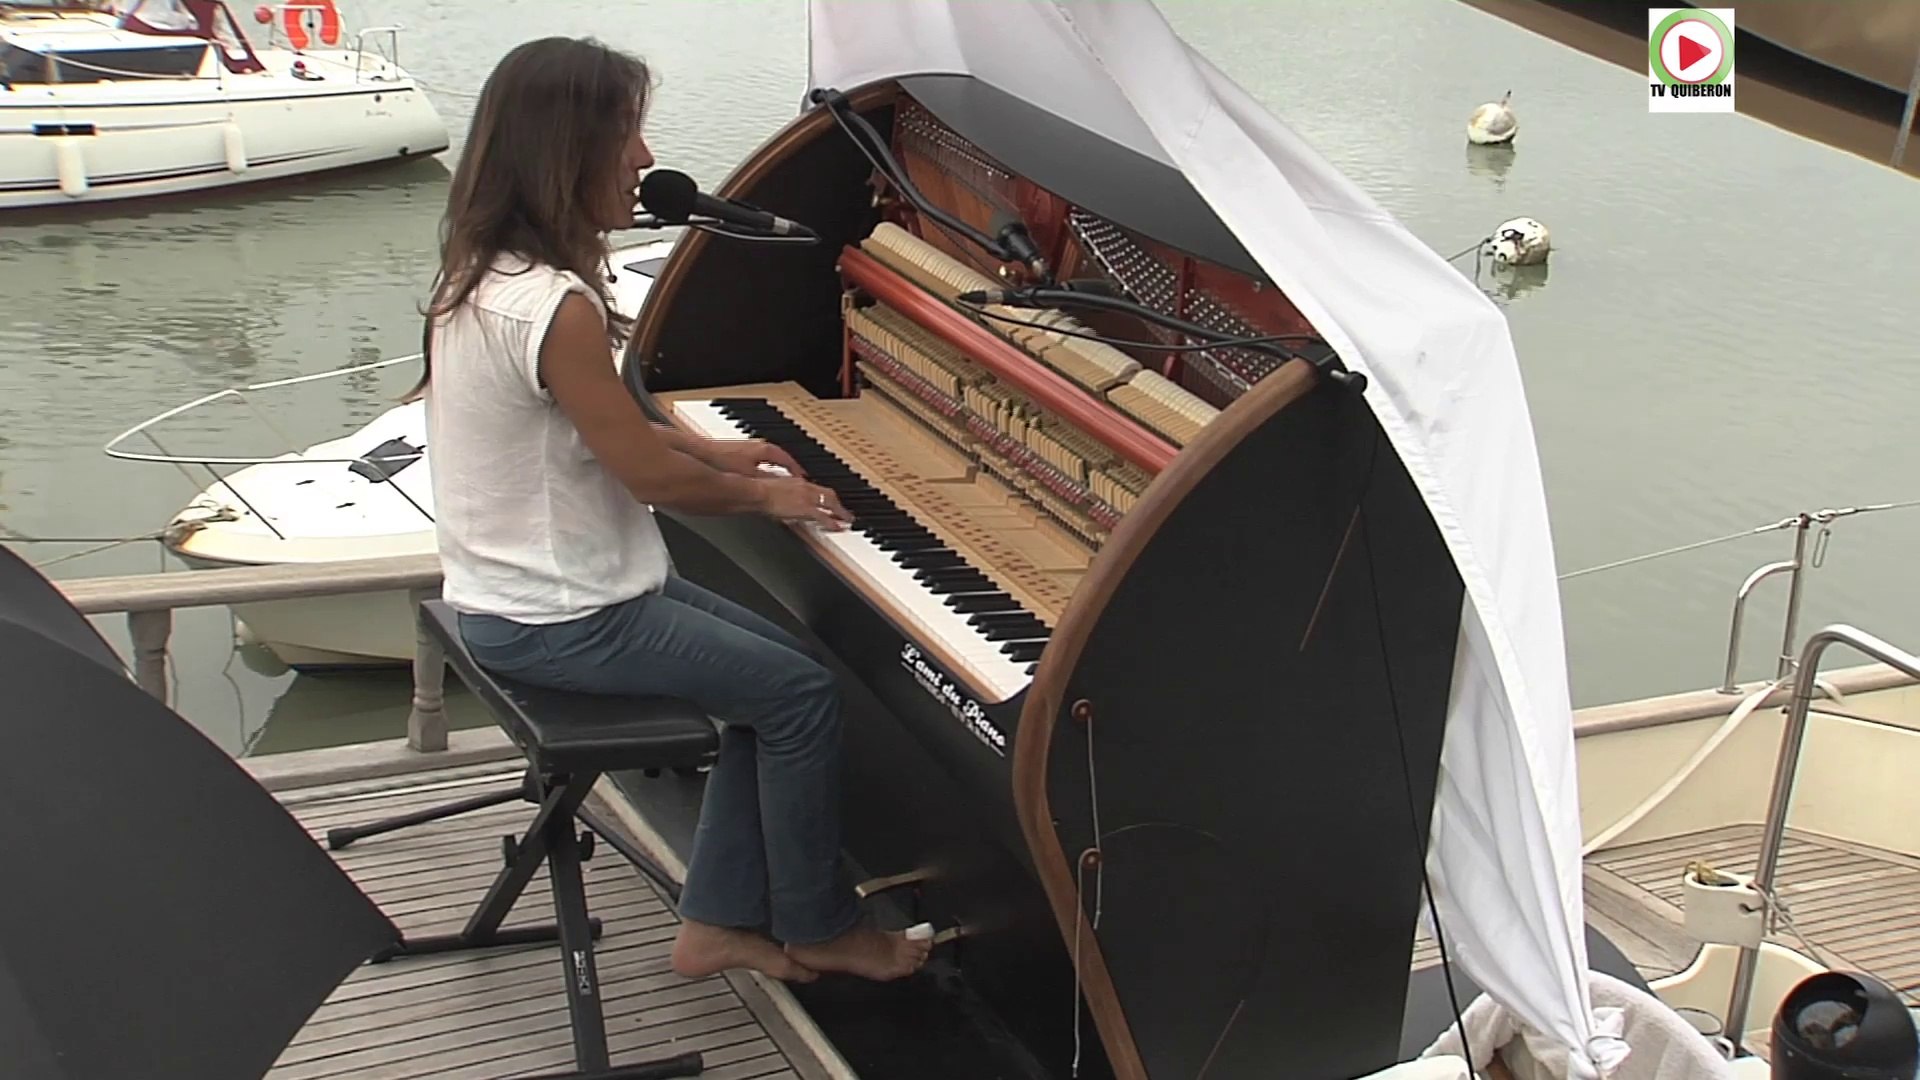 Quiberon: Pianocean un piano sur un bateau - Bretagne Télé - Vidéo  Dailymotion